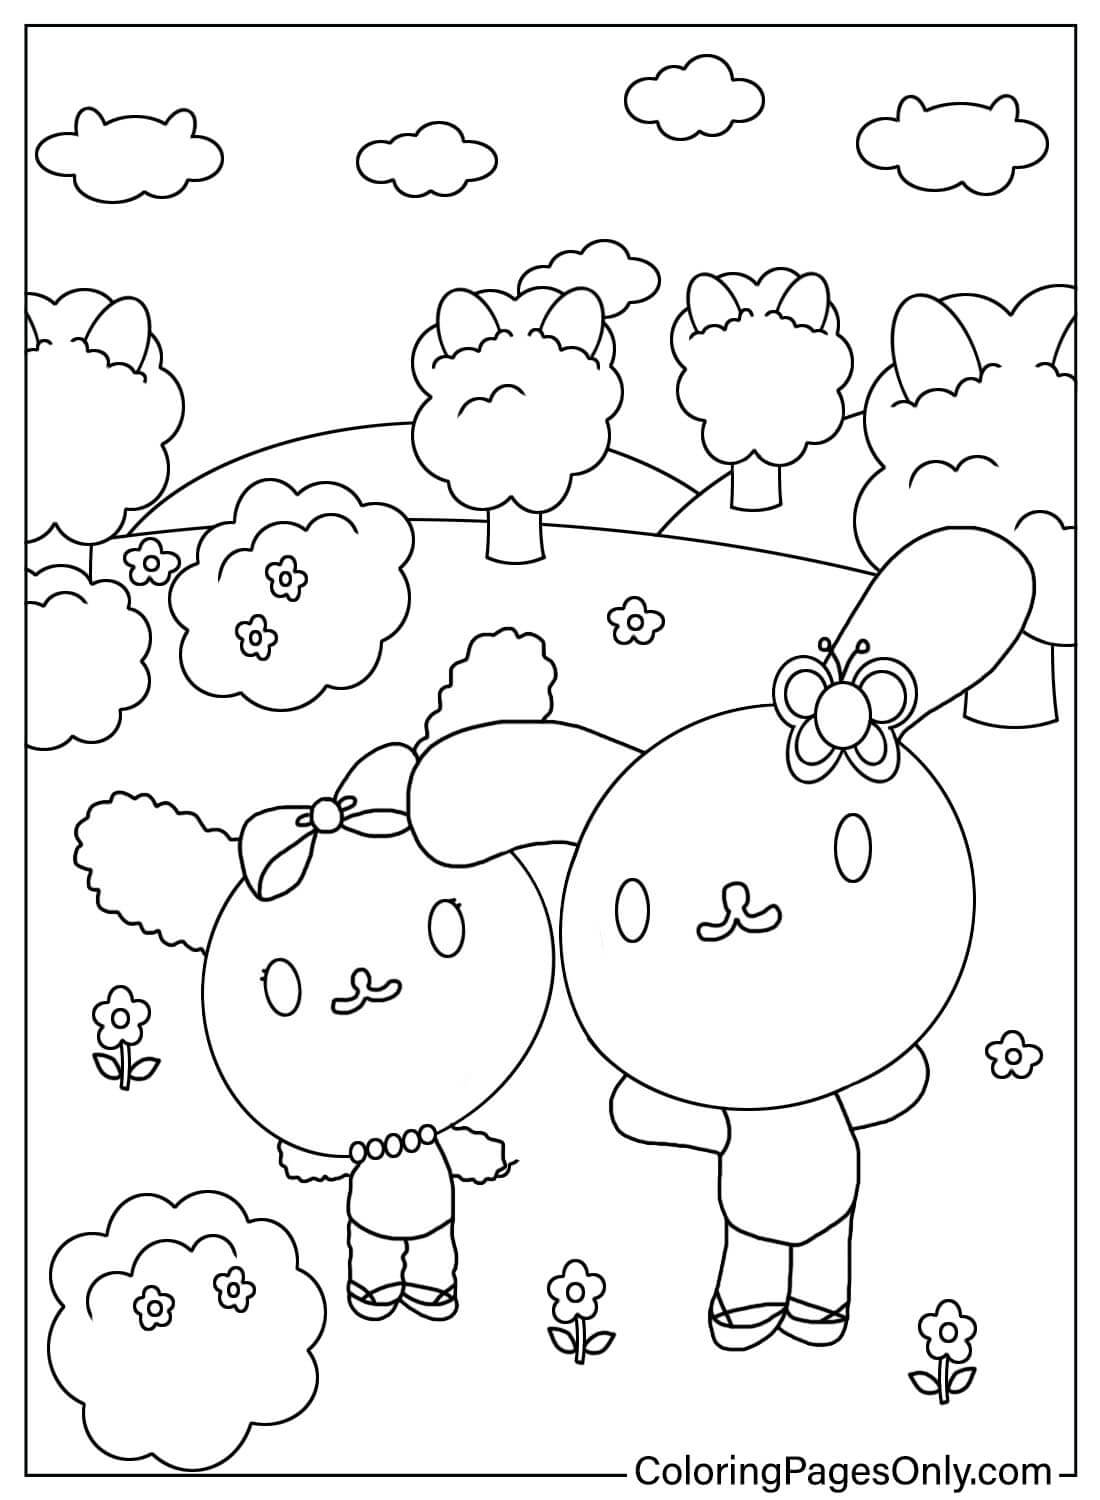 Usahana and Sakura Coloring Page from Usahana